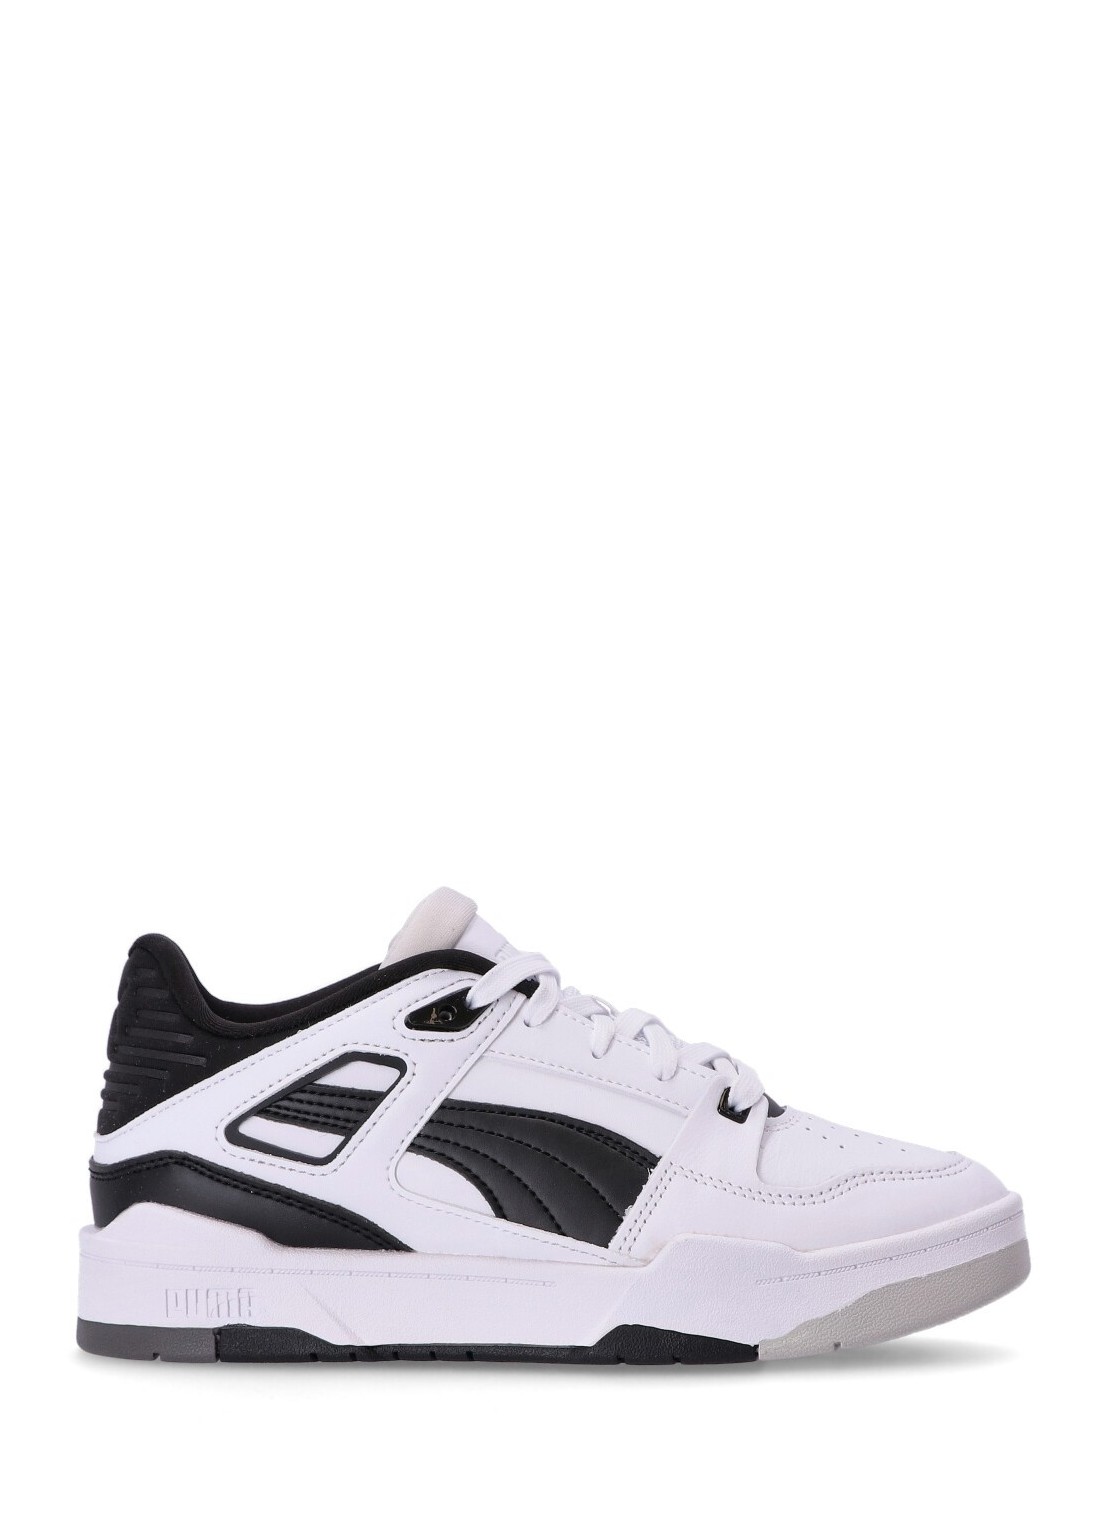 Sneaker puma sneaker woman slipstream invdr wns 38627003 white  black glacier gray talla blanco
 